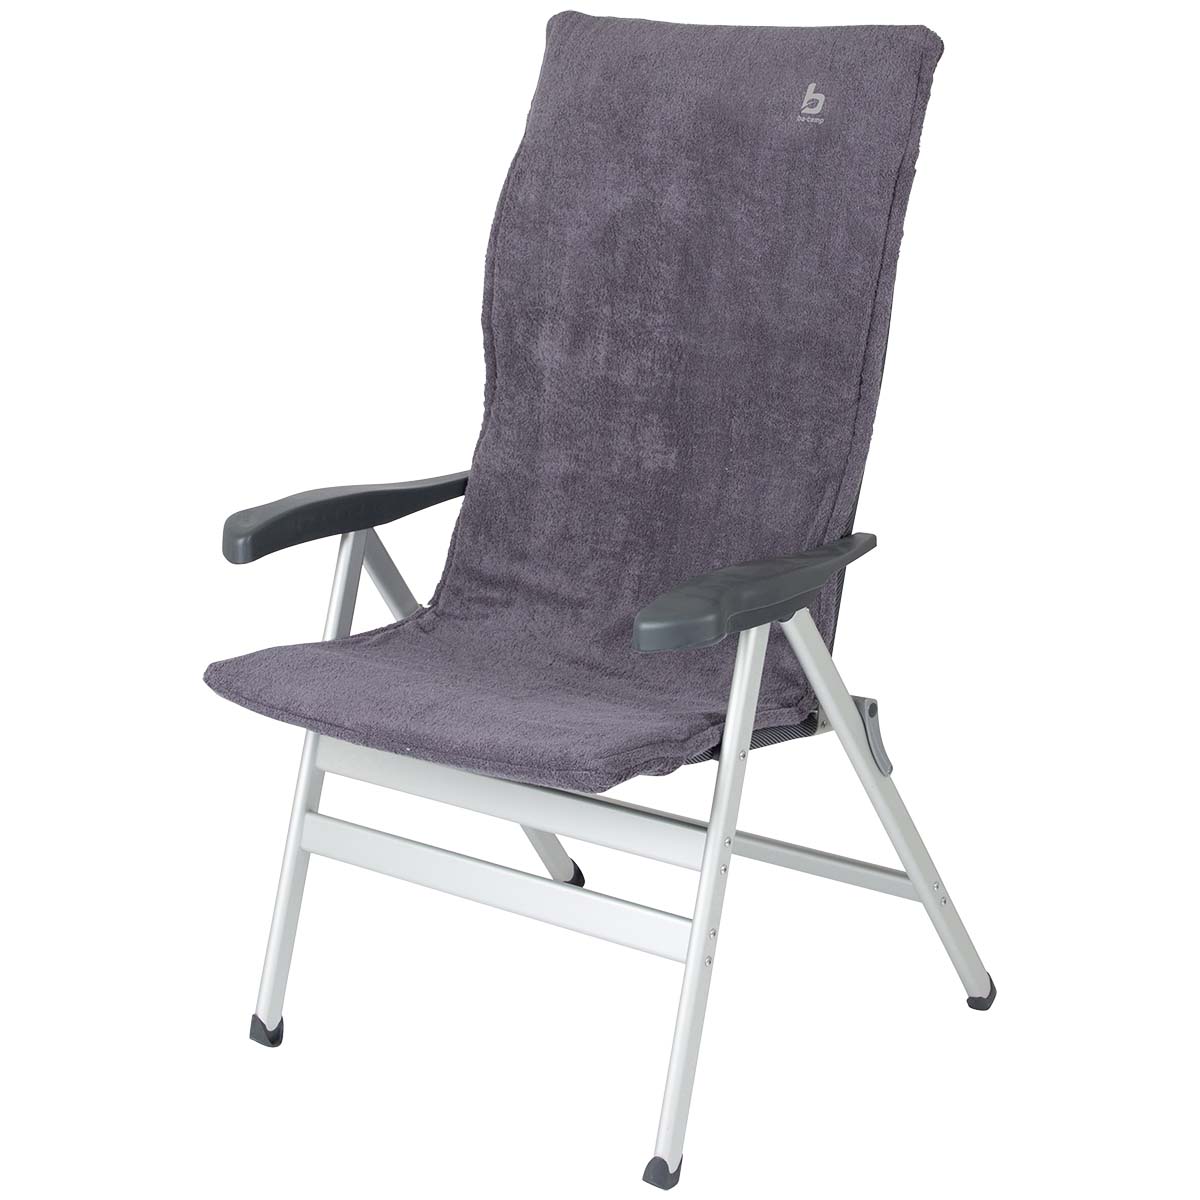 1849297 Een extra zachte stoelhoes voor (kampeer)stoelen. Deze universele hoes zorgt voor optimaal zitcomfort en biedt bescherming aan de stoel. Extra comfortabel door het gepolsterde badstof. De stoelhoes is universeel toepasbaar.